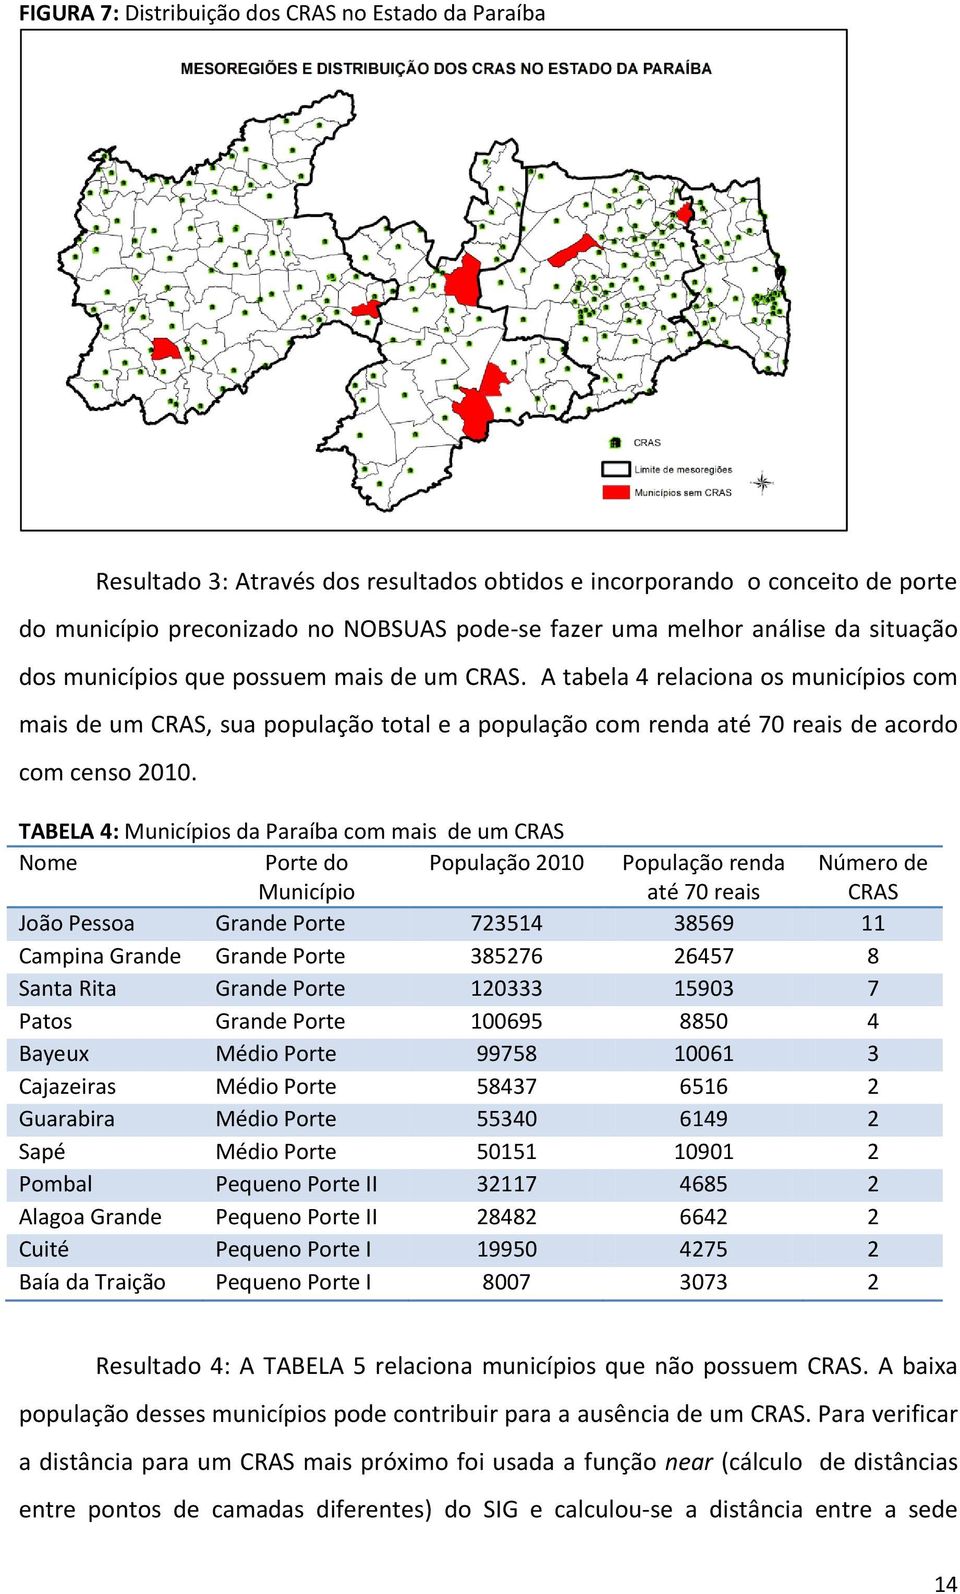 A tabela 4 relaciona os municípios com mais de um CRAS, sua população total e a população com renda até 70 reais de acordo com censo 2010.